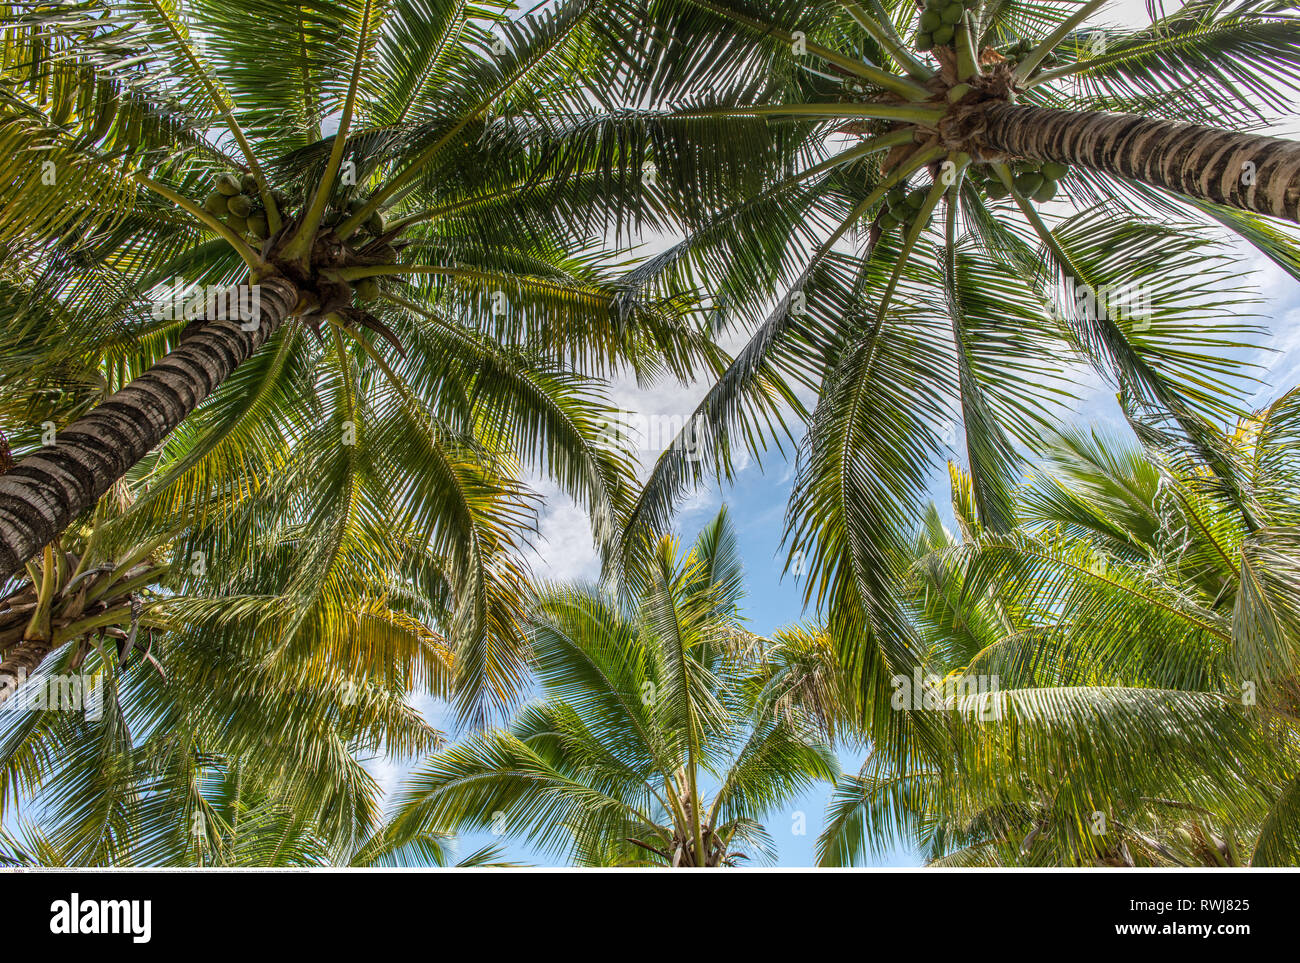 La botanica, alberi di cocco (Cocos nucifera) su th, attenzione! Per Greetingcard-Use / Postcard-Use nei Paesi di lingua tedesca talune restrizioni possono applicare Foto Stock